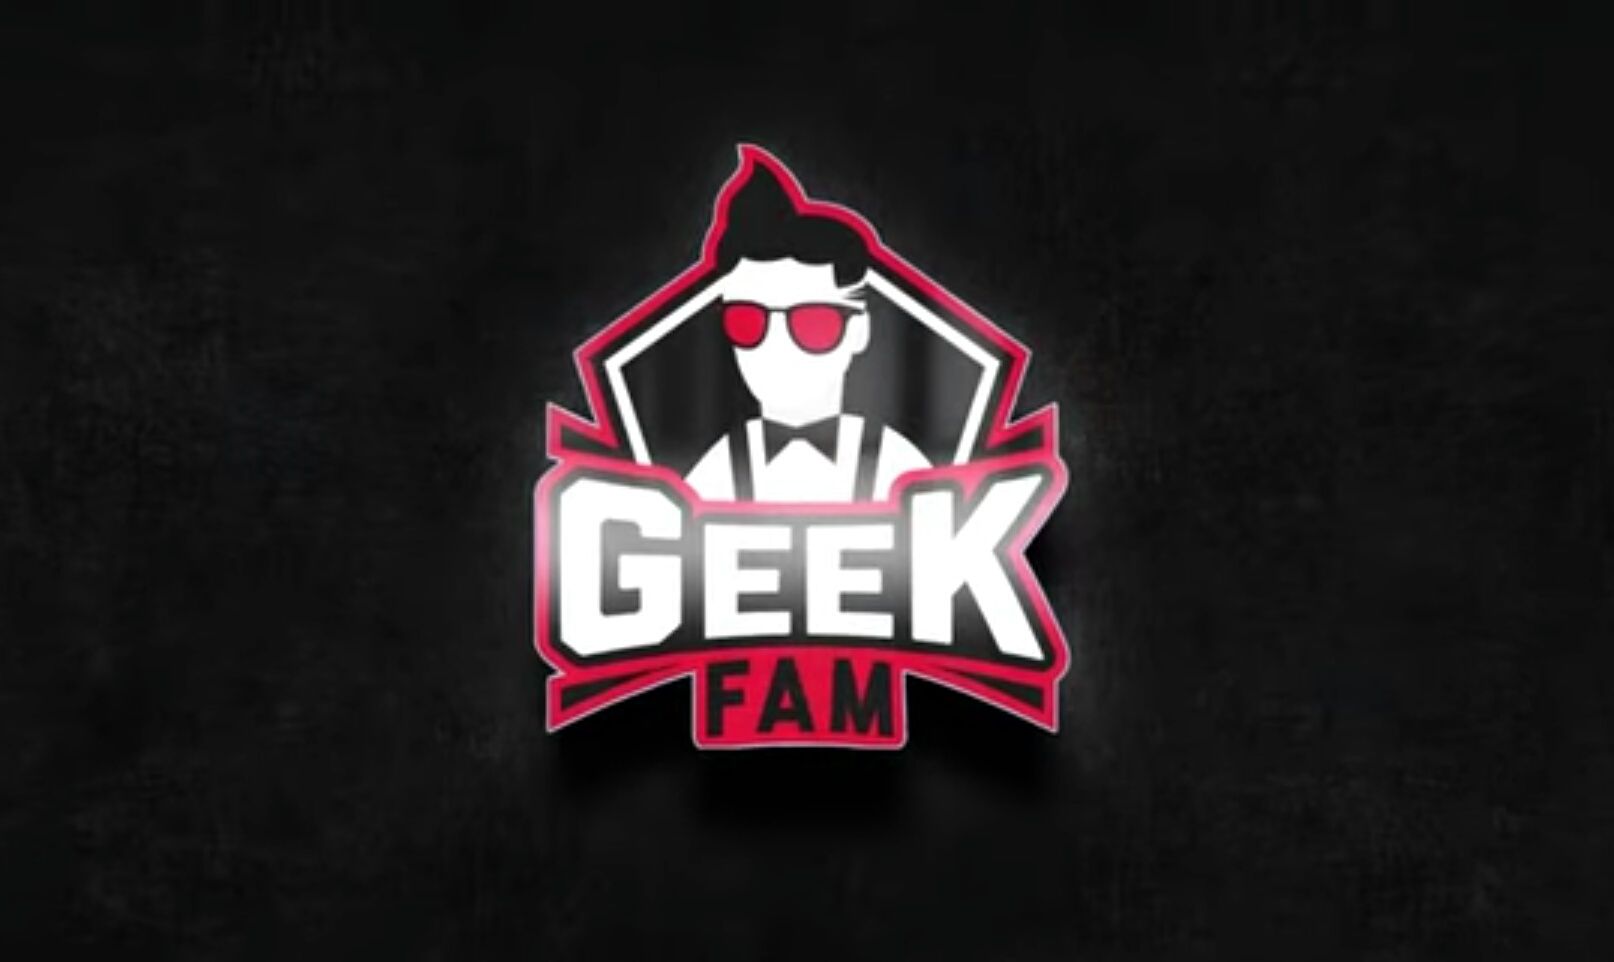 Geek Fam Kini Akan Mendatangkan Dua Pemain Baru!